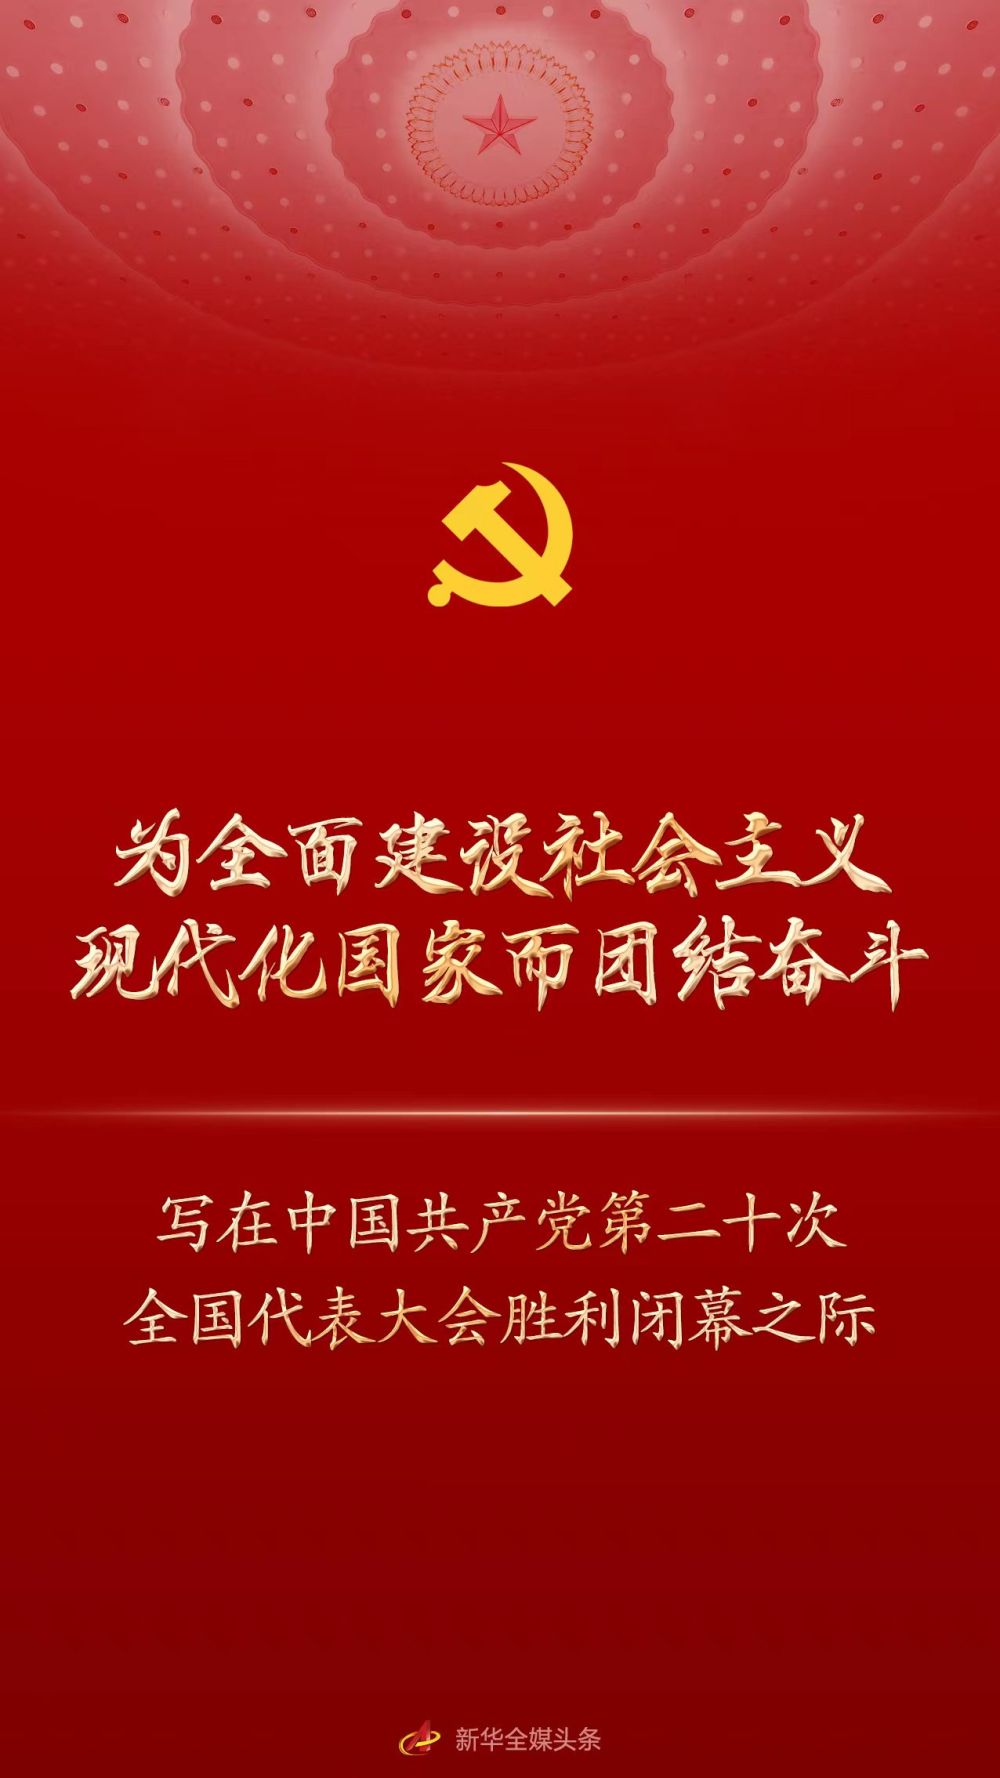 为全面建设社会主义现代化国家而团结奋斗 写在中国共产党第二十次全国代表大会胜利闭幕之际 中国日报网